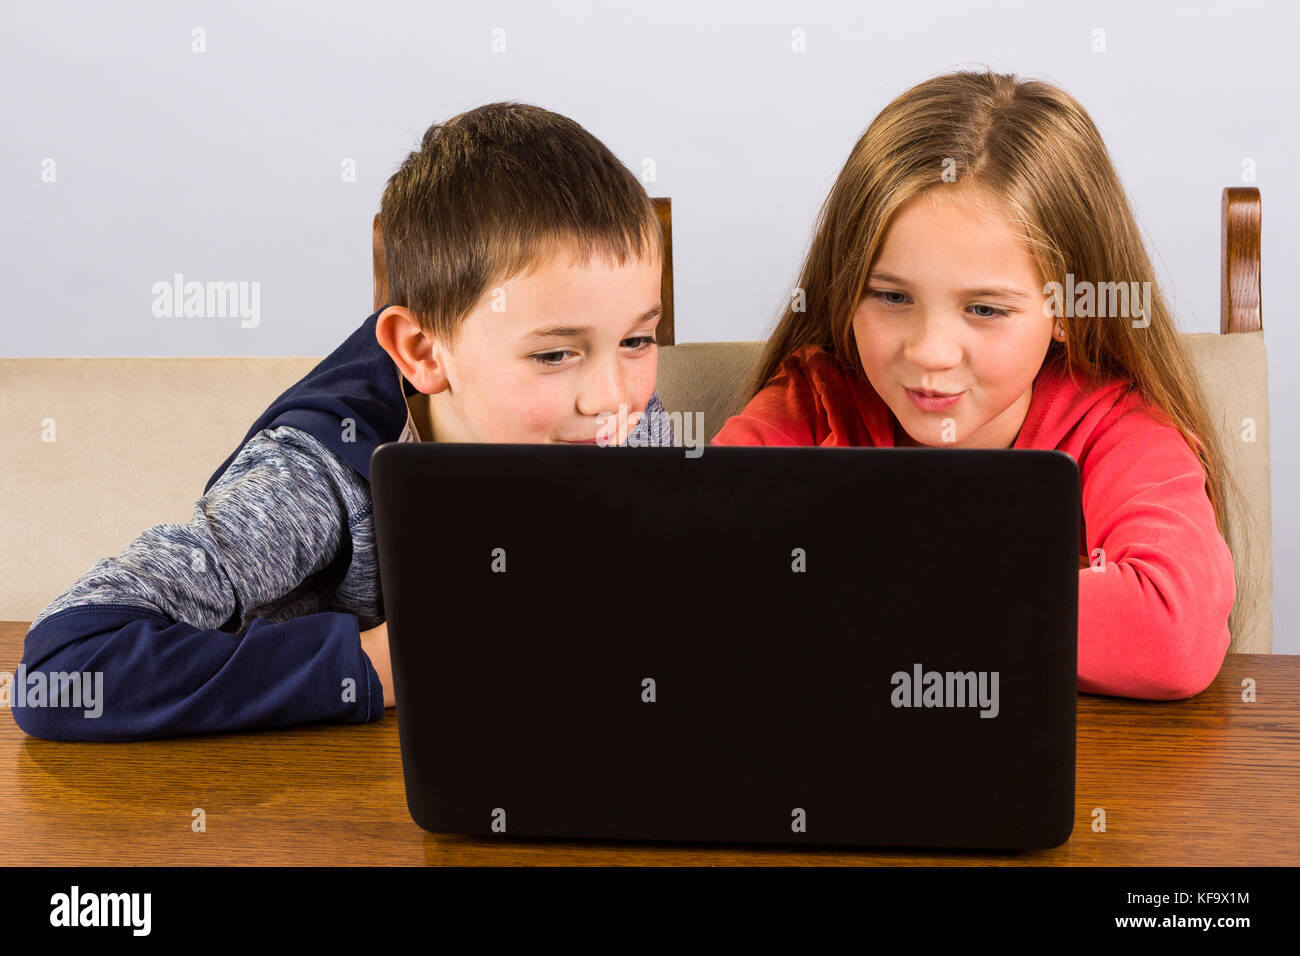 Kleinen Jungen und Mädchen Spaß haben auf einem Laptop. Stockfoto